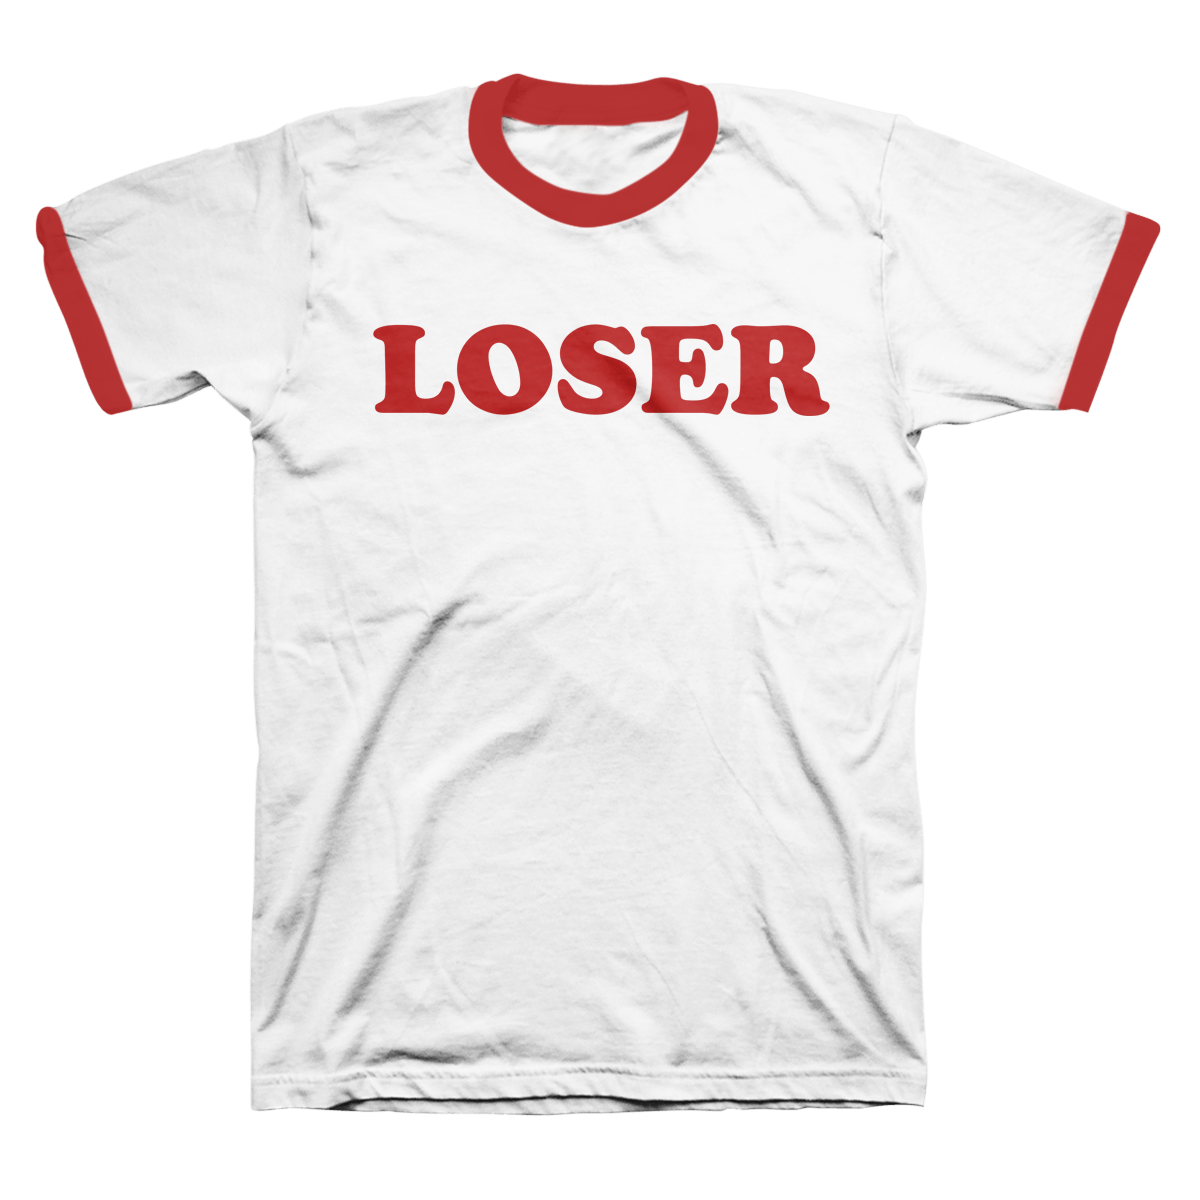 Loser Ringer Tee - Beck